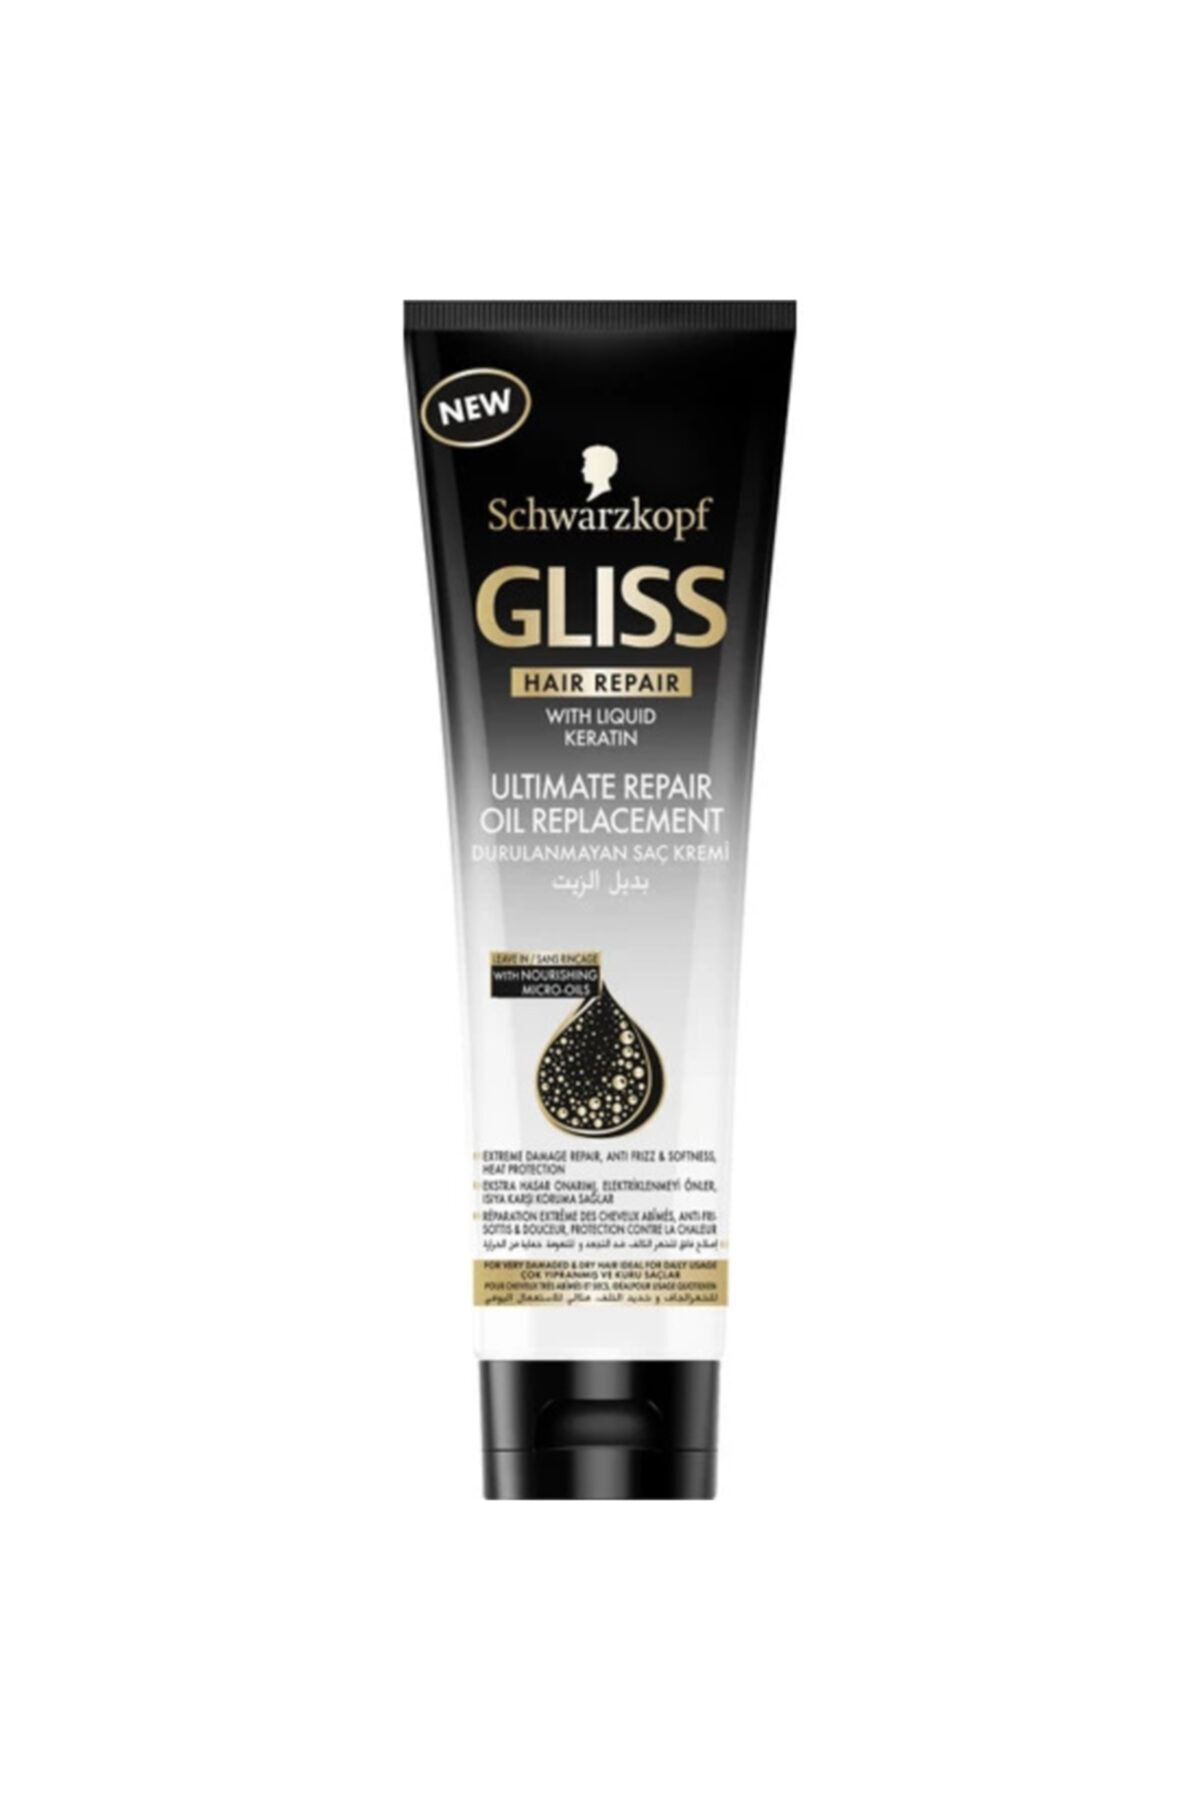 Gliss Ultimate Repair Durulanmayan Saç Kremi 250 ml